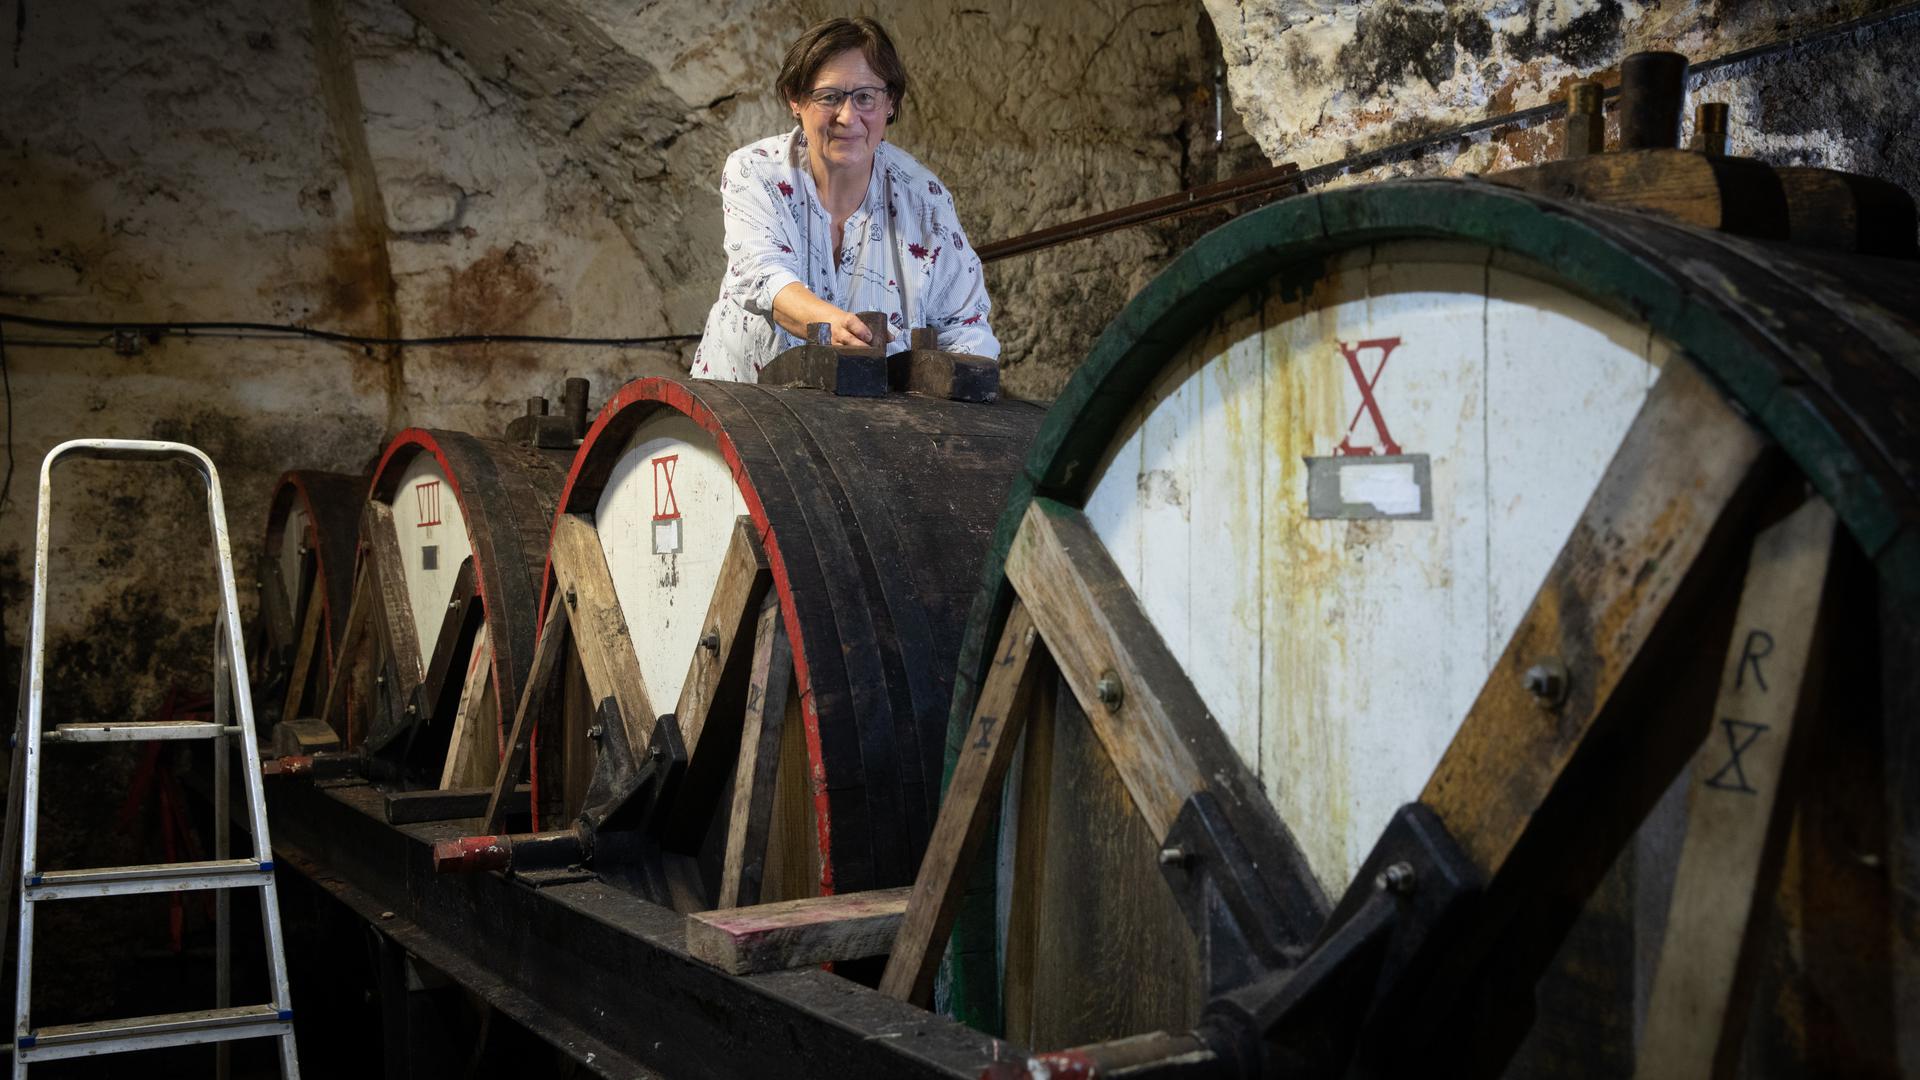 Vier Monate setzt Jacqueline Kuijpers den Cassis im Keller des Renaissanceschlosses an. In der zweiten Phase müssen die Fässer drei Mal am Tag ein Stückchen gedreht werden.